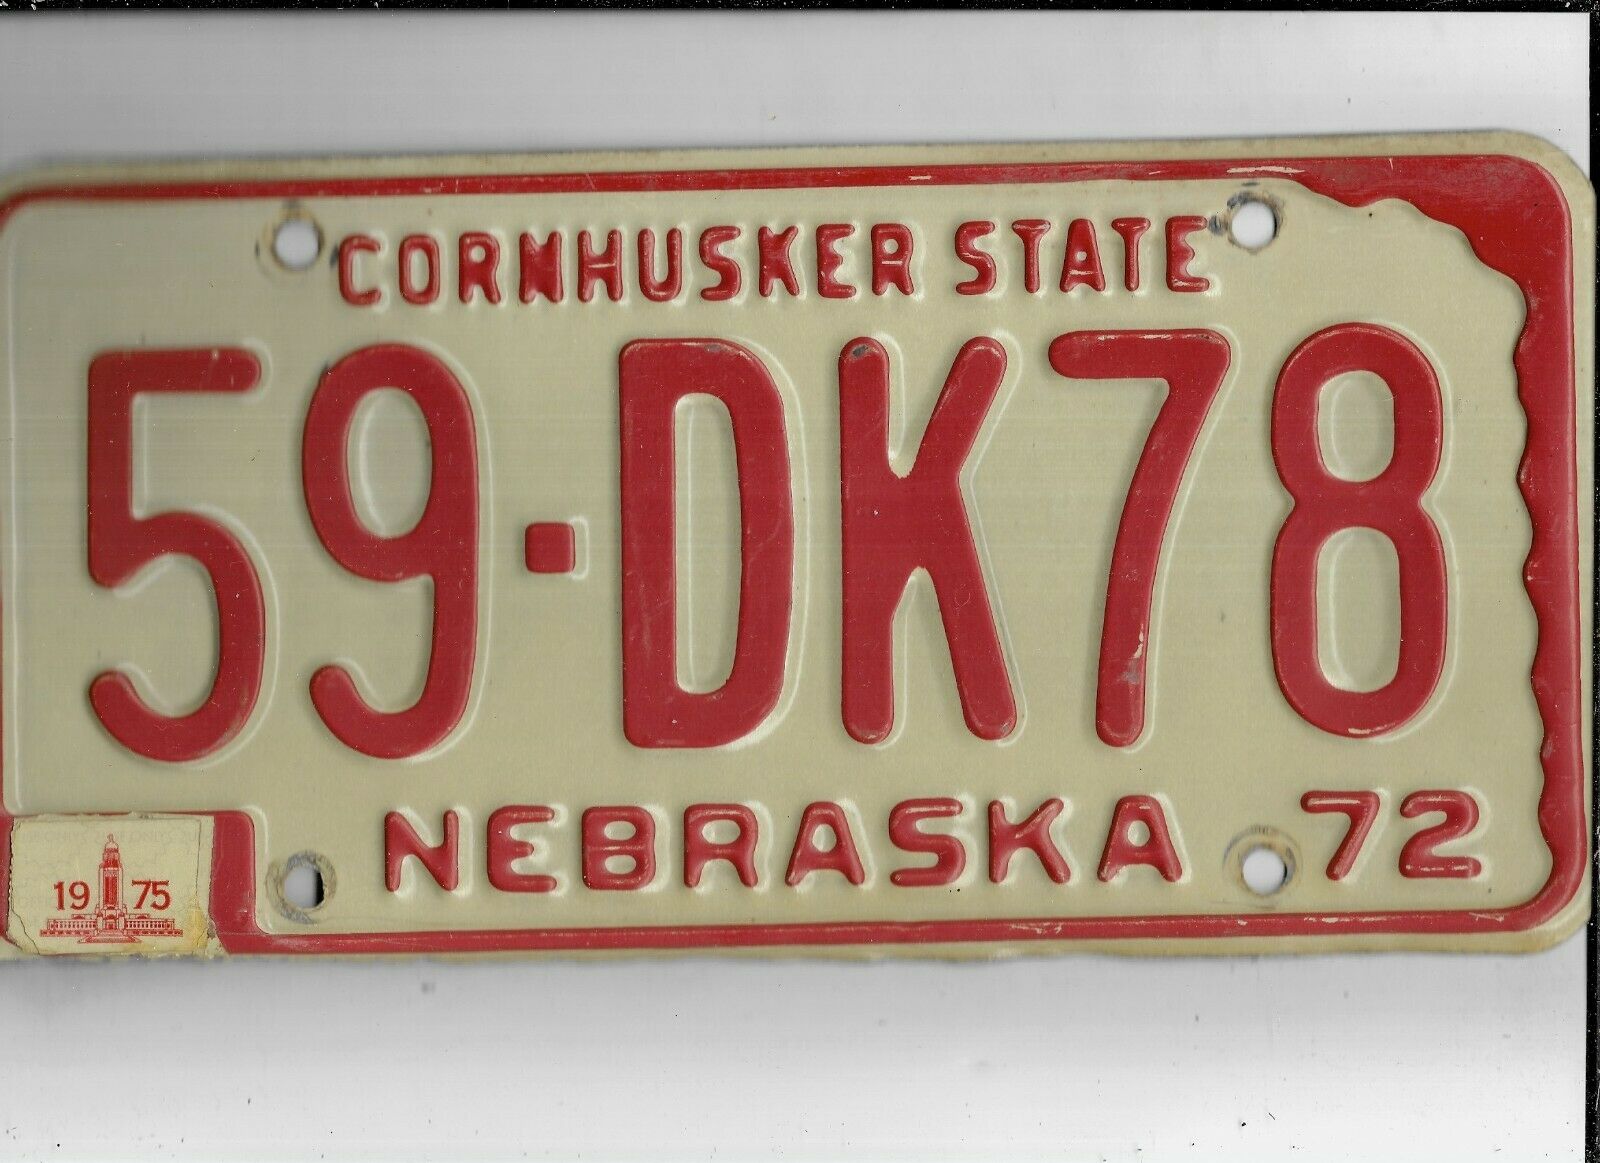 Nebraska Passenger 1975 License Plate "59-dk78" ***sarpy***